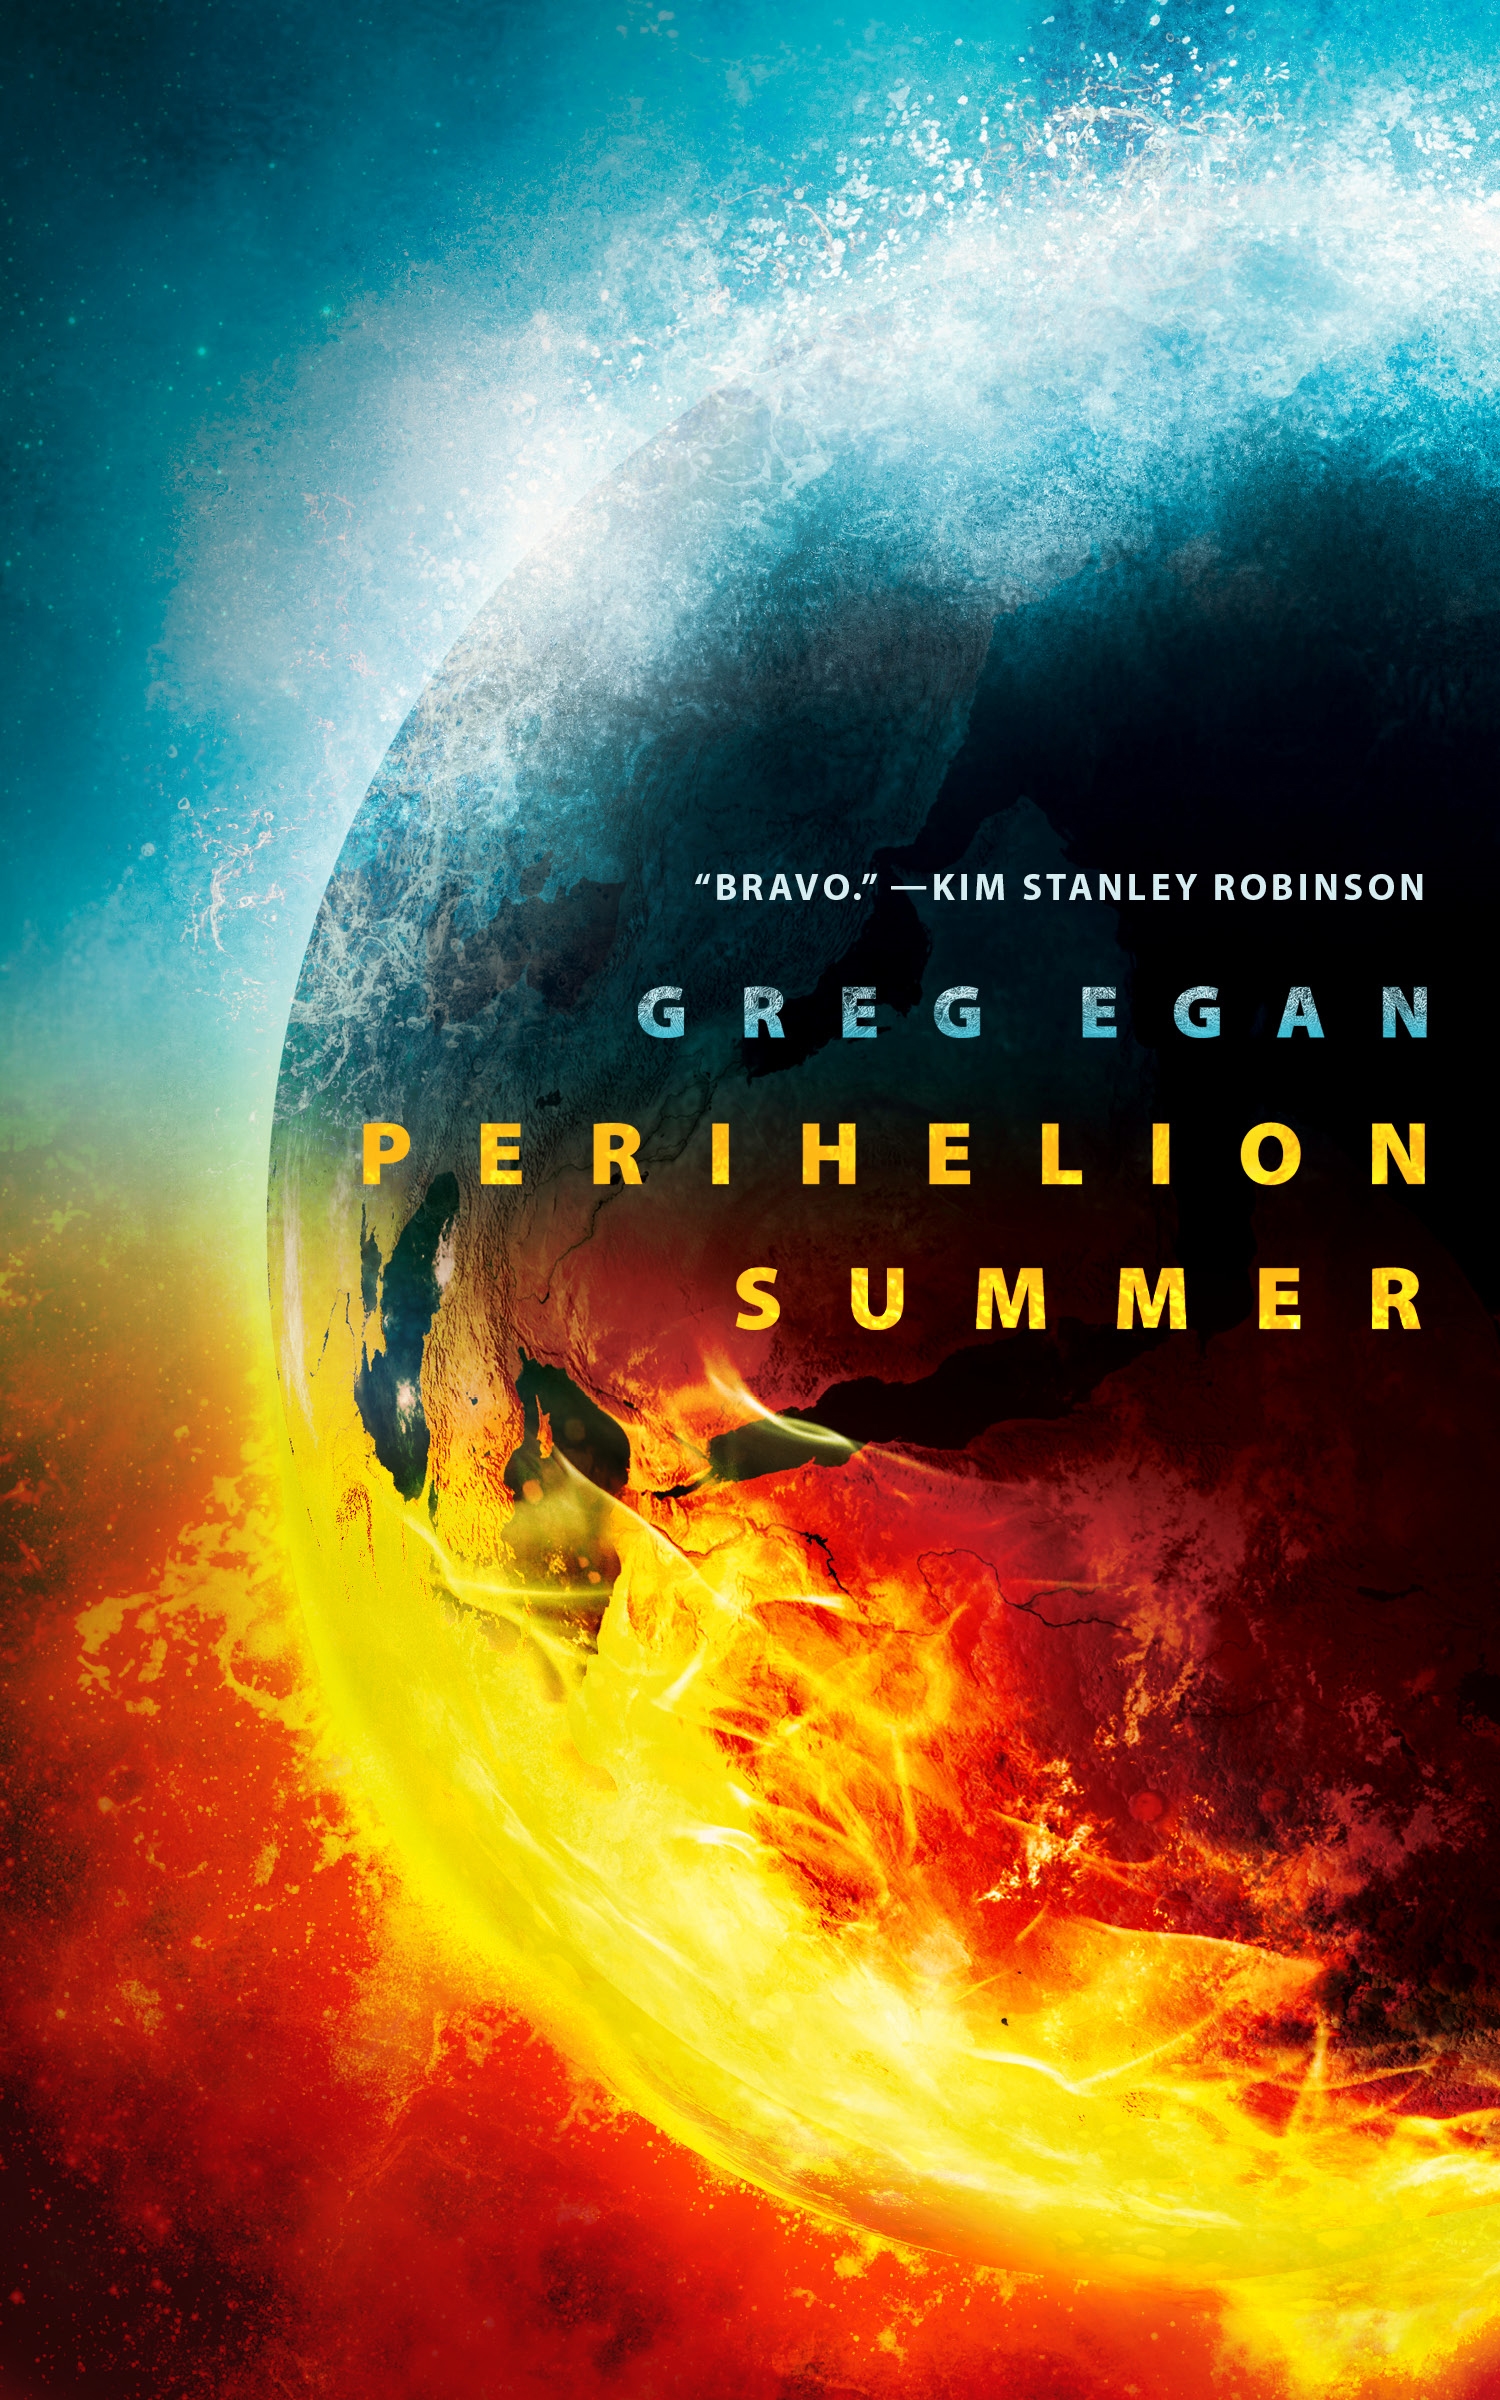 Perihelion Summer by Greg Egan